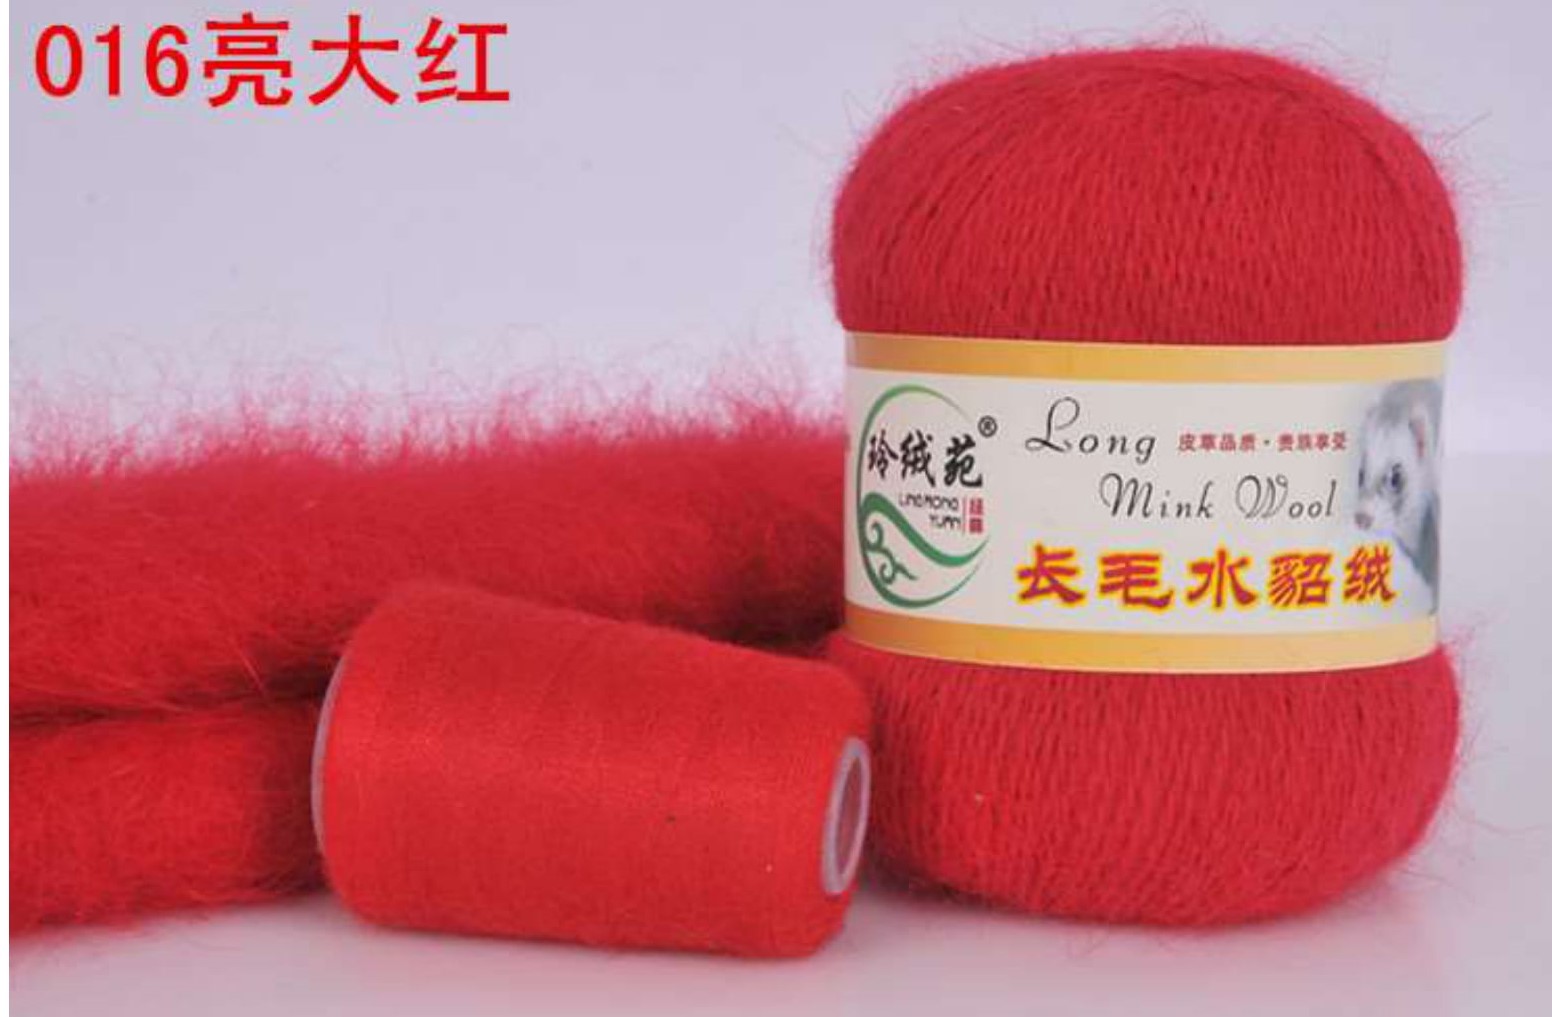 Пряжа Норка длинноворсовая (Long Mink Wool) 16 - алый